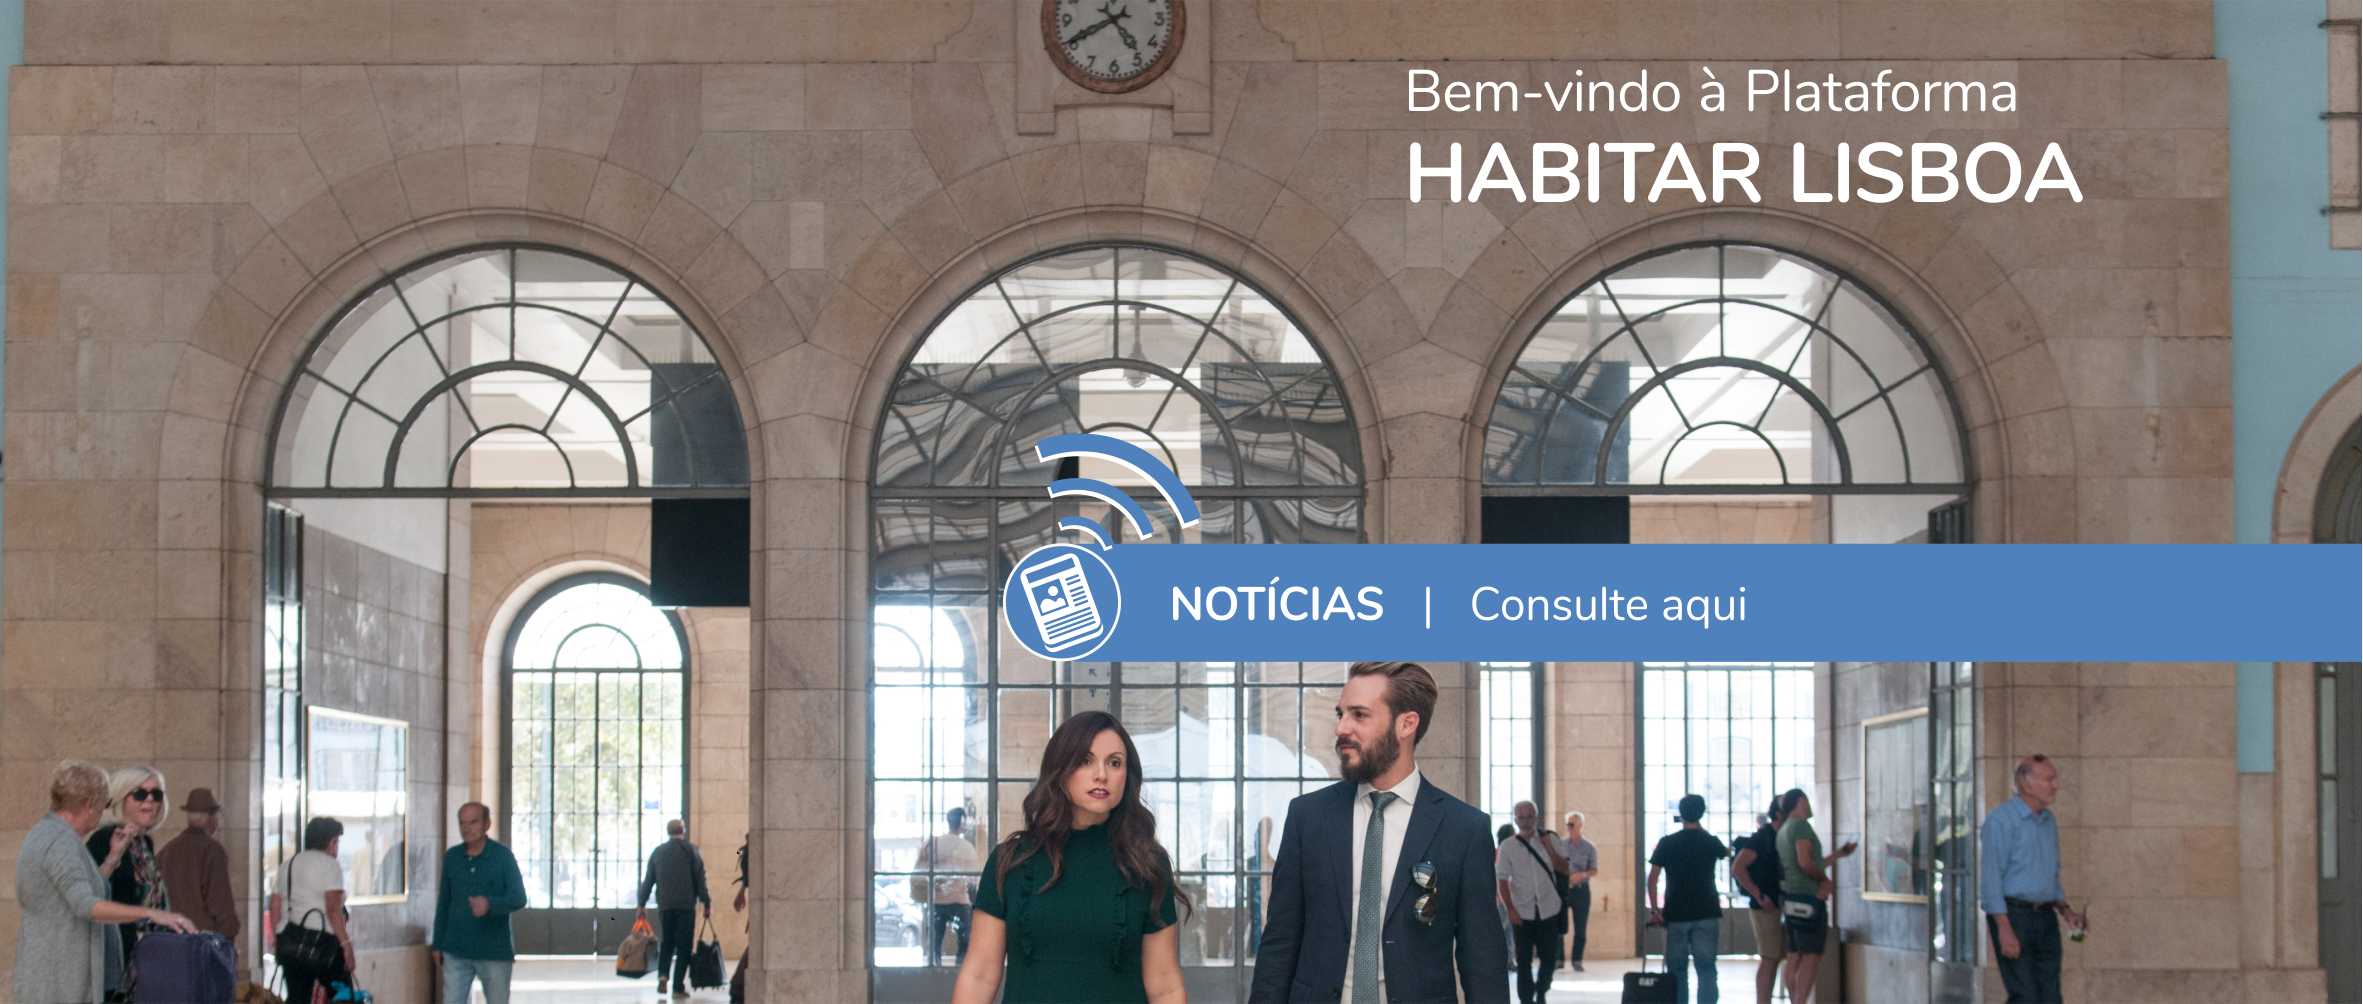 Notícias da Plataforma Habitar Lisboa